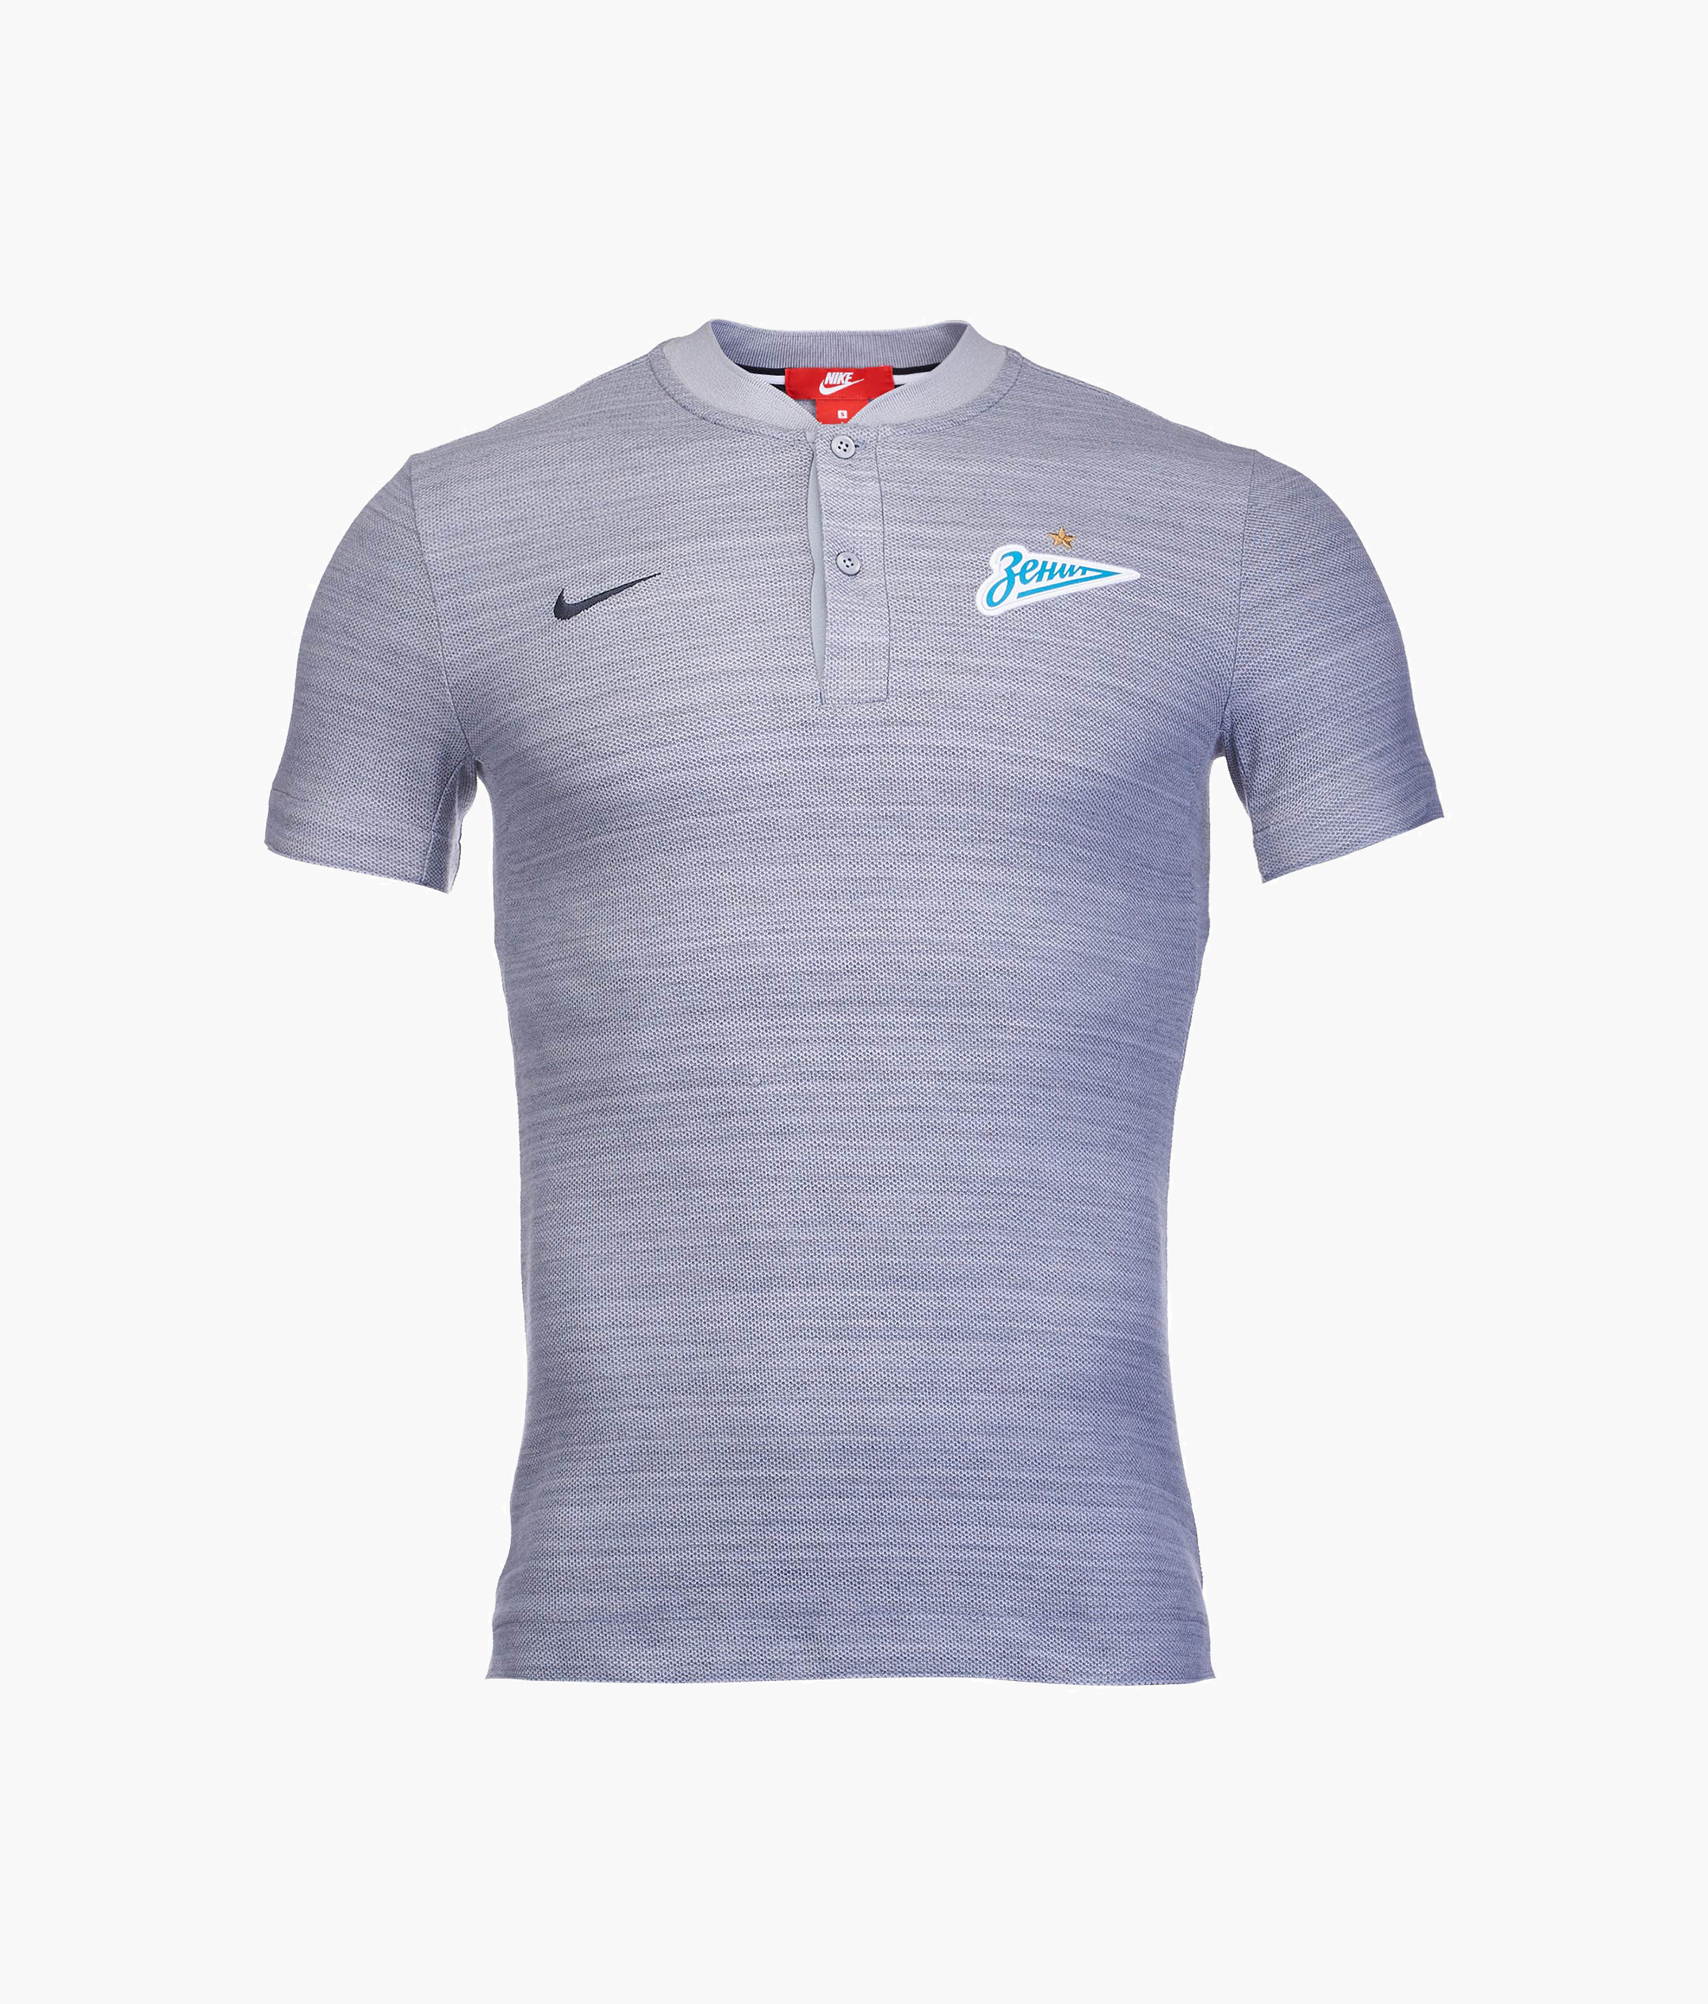 Поло Nike Zenit сезона 2018/19 Nike Цвет-Серый